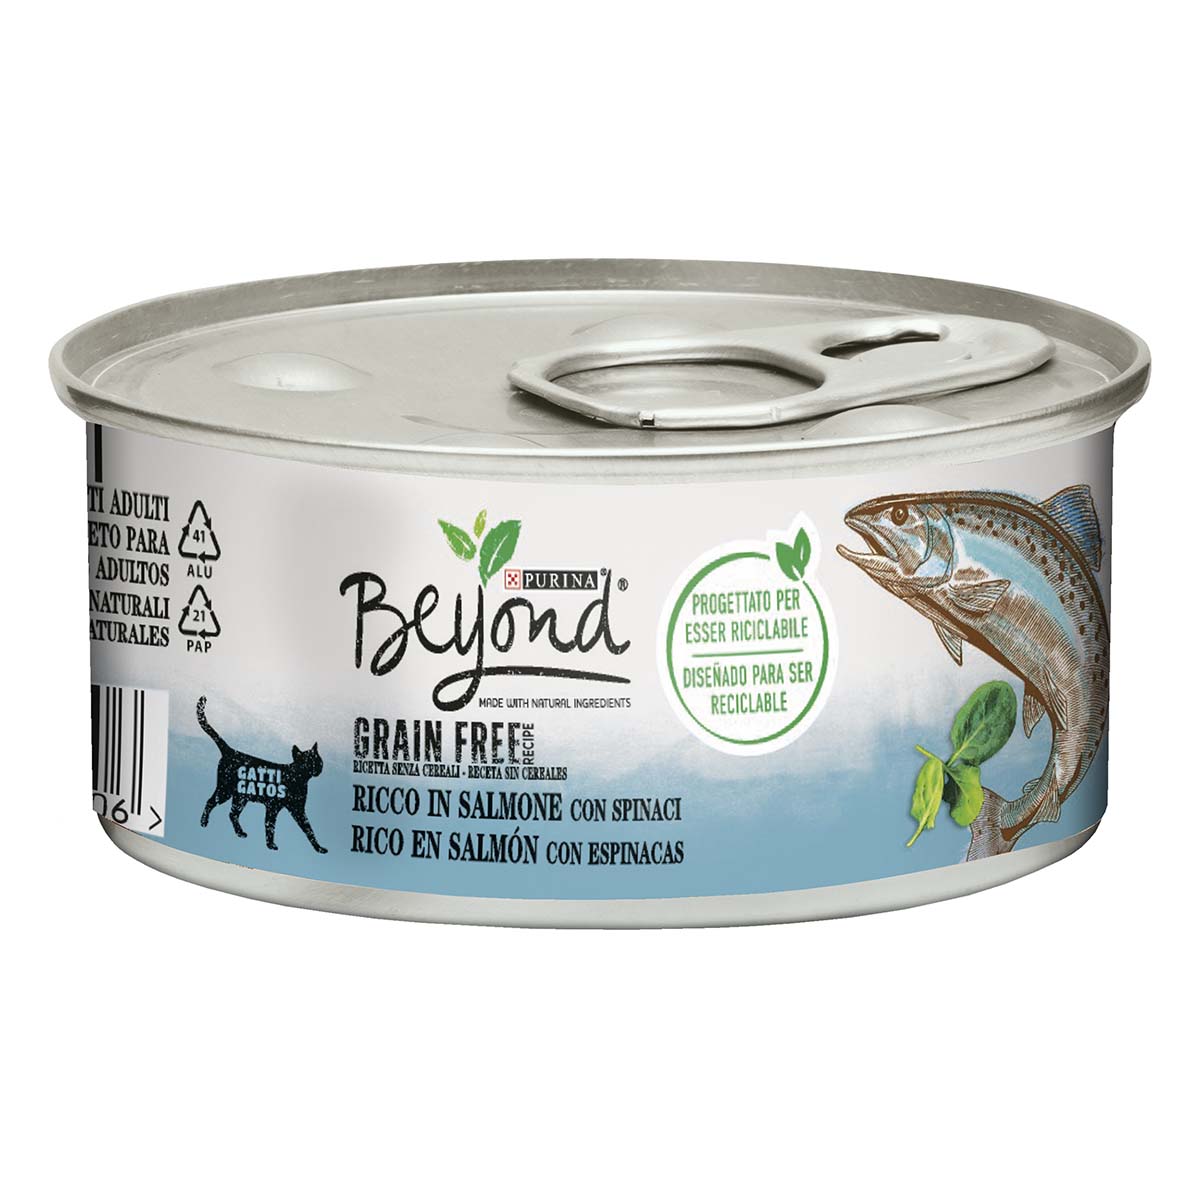 Beyond Mousse per gatti Grain Free ricca in salmone con spinaci - 85g